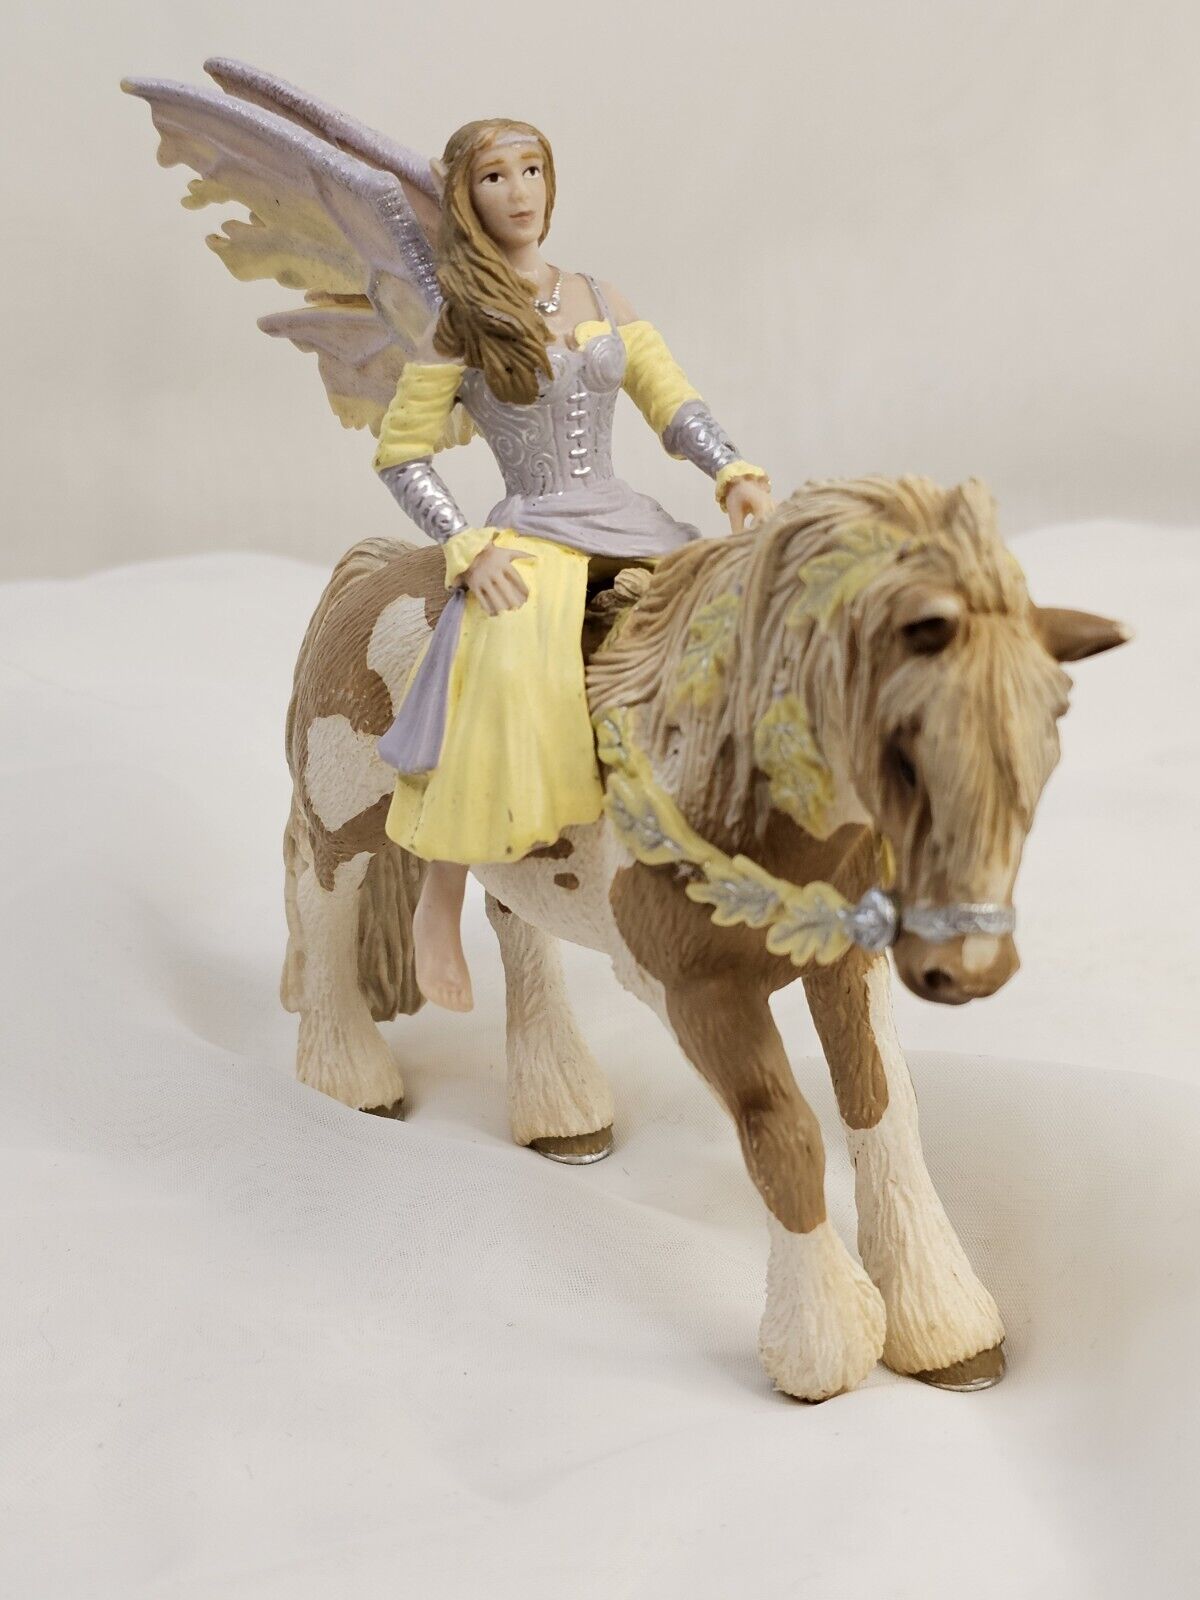 Schleich Bayala Elfen Elf Sera & Horse Figure Fantasy Fairy Collectible Toy 2006